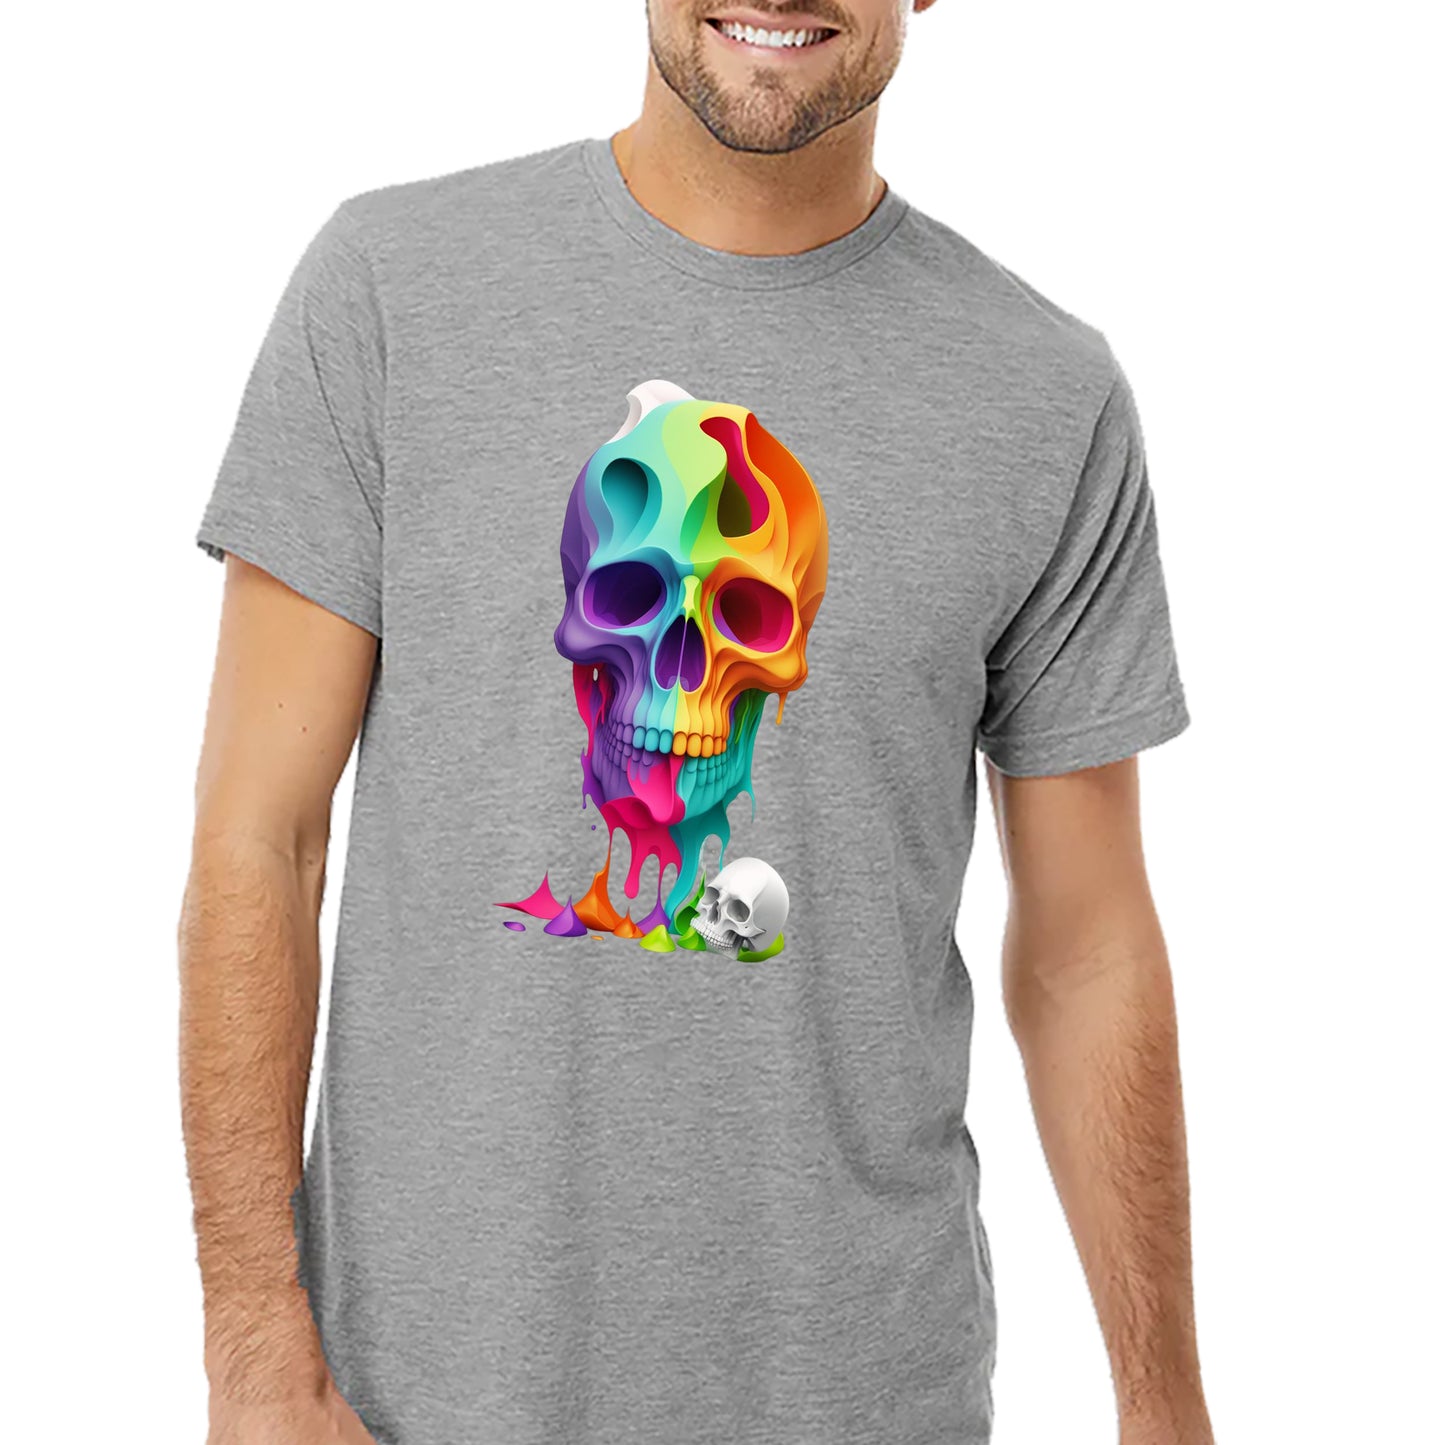 Melted Skull T-shirt